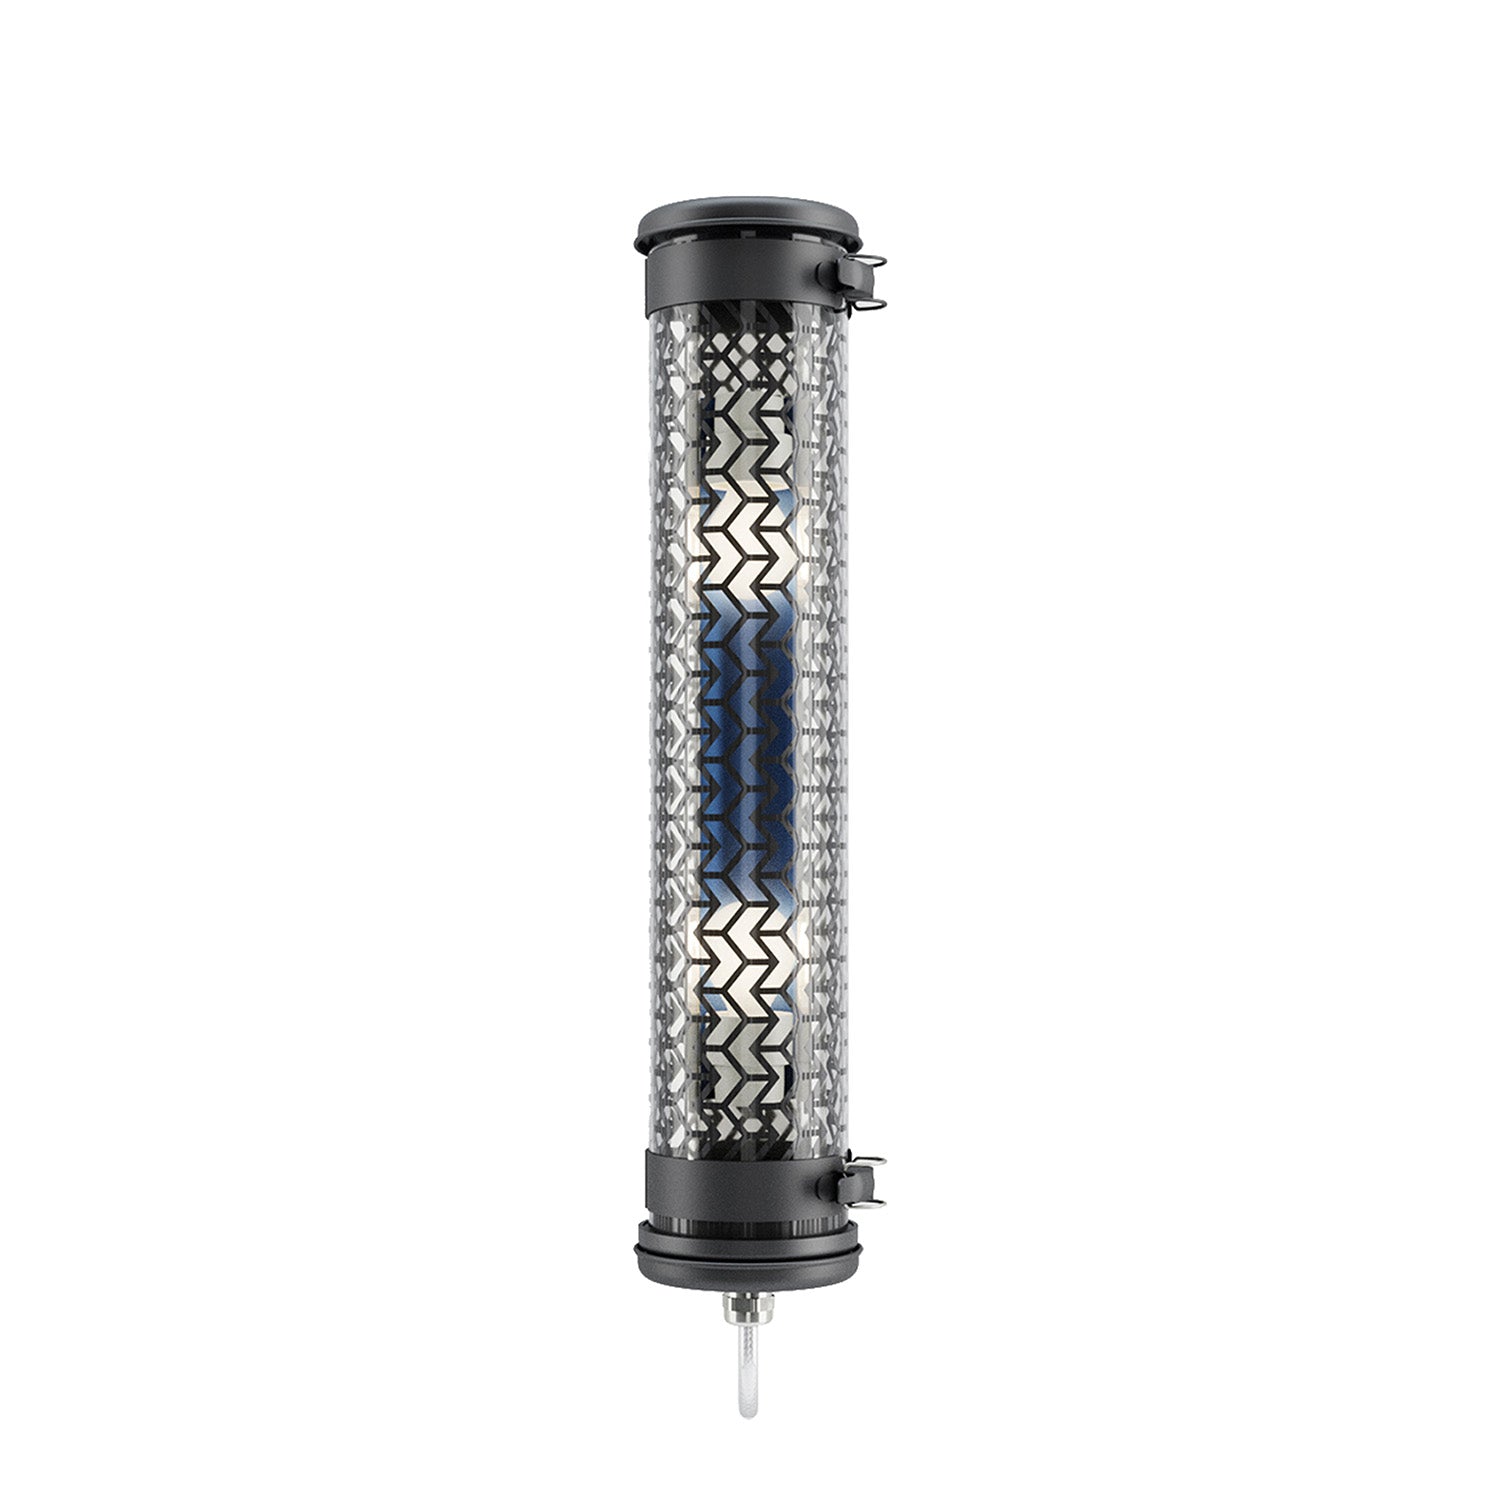 MONCEAU MINI - Black steel waterproof designer tube wall light